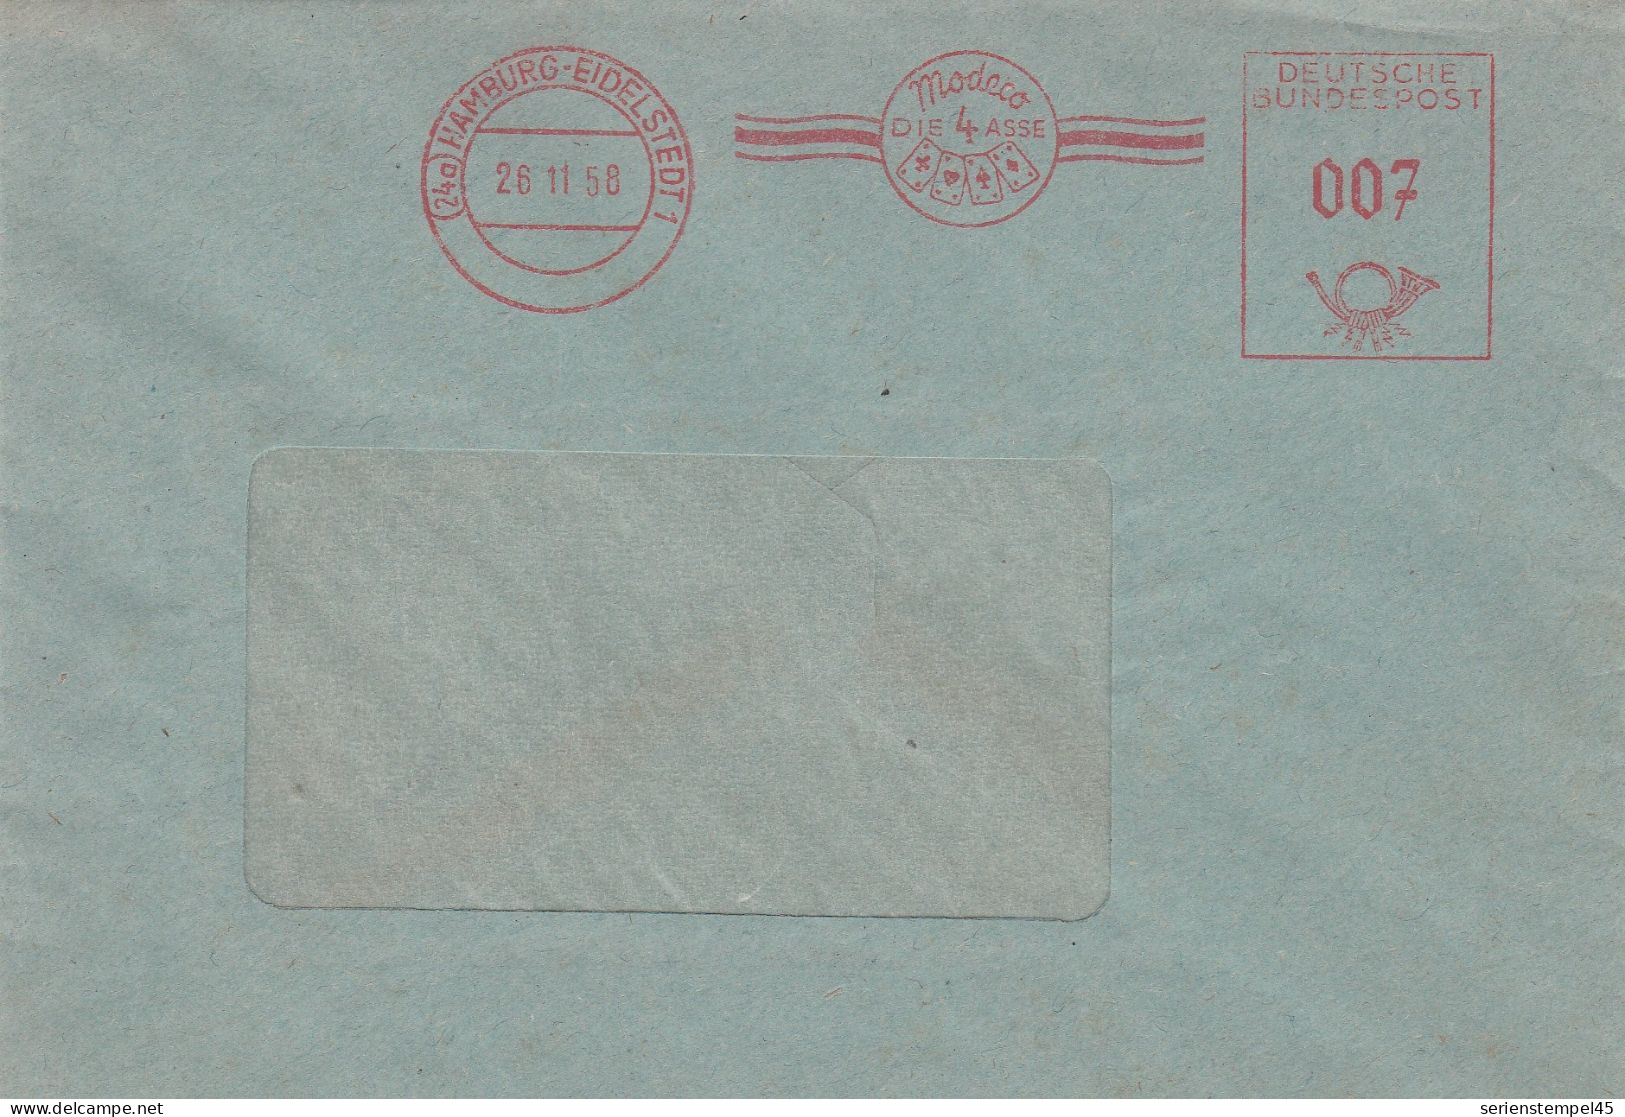 Bund Brief Mit Freistempel Rot Mit Motiv Kartenspiel Hamburg Eidelstedt 1958 Modeco Die 4 Asse - Non Classificati